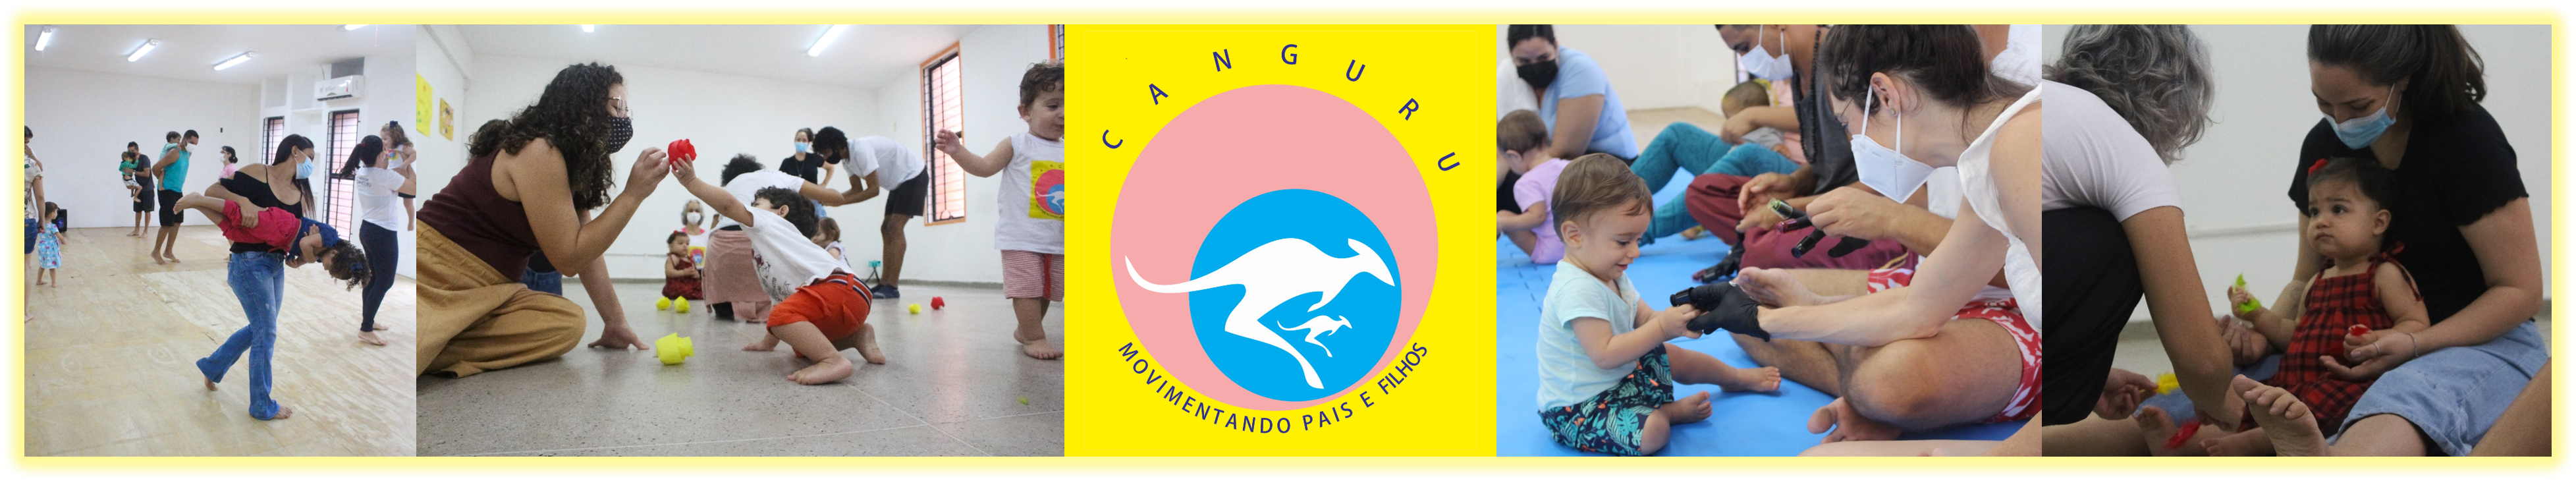 Banner Canguru